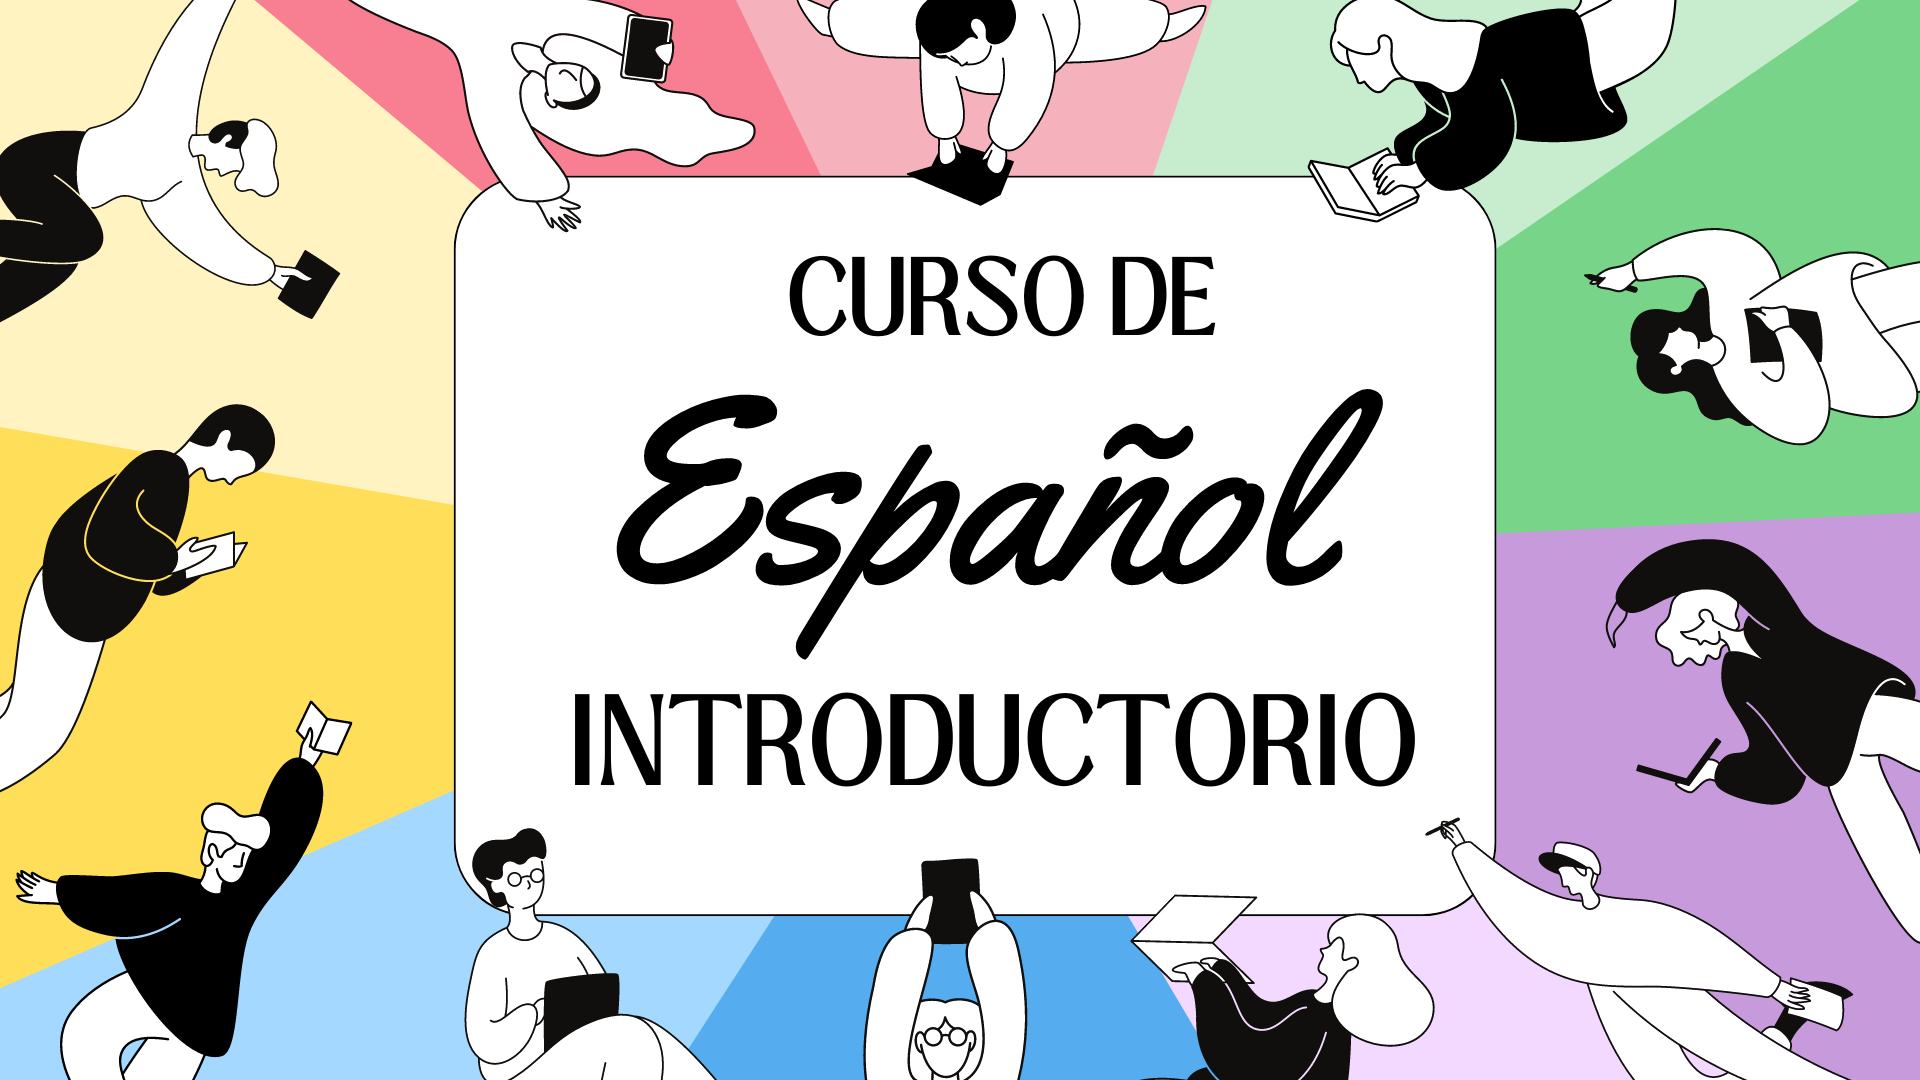 Curso de Español Introductorio (PRE-A1)